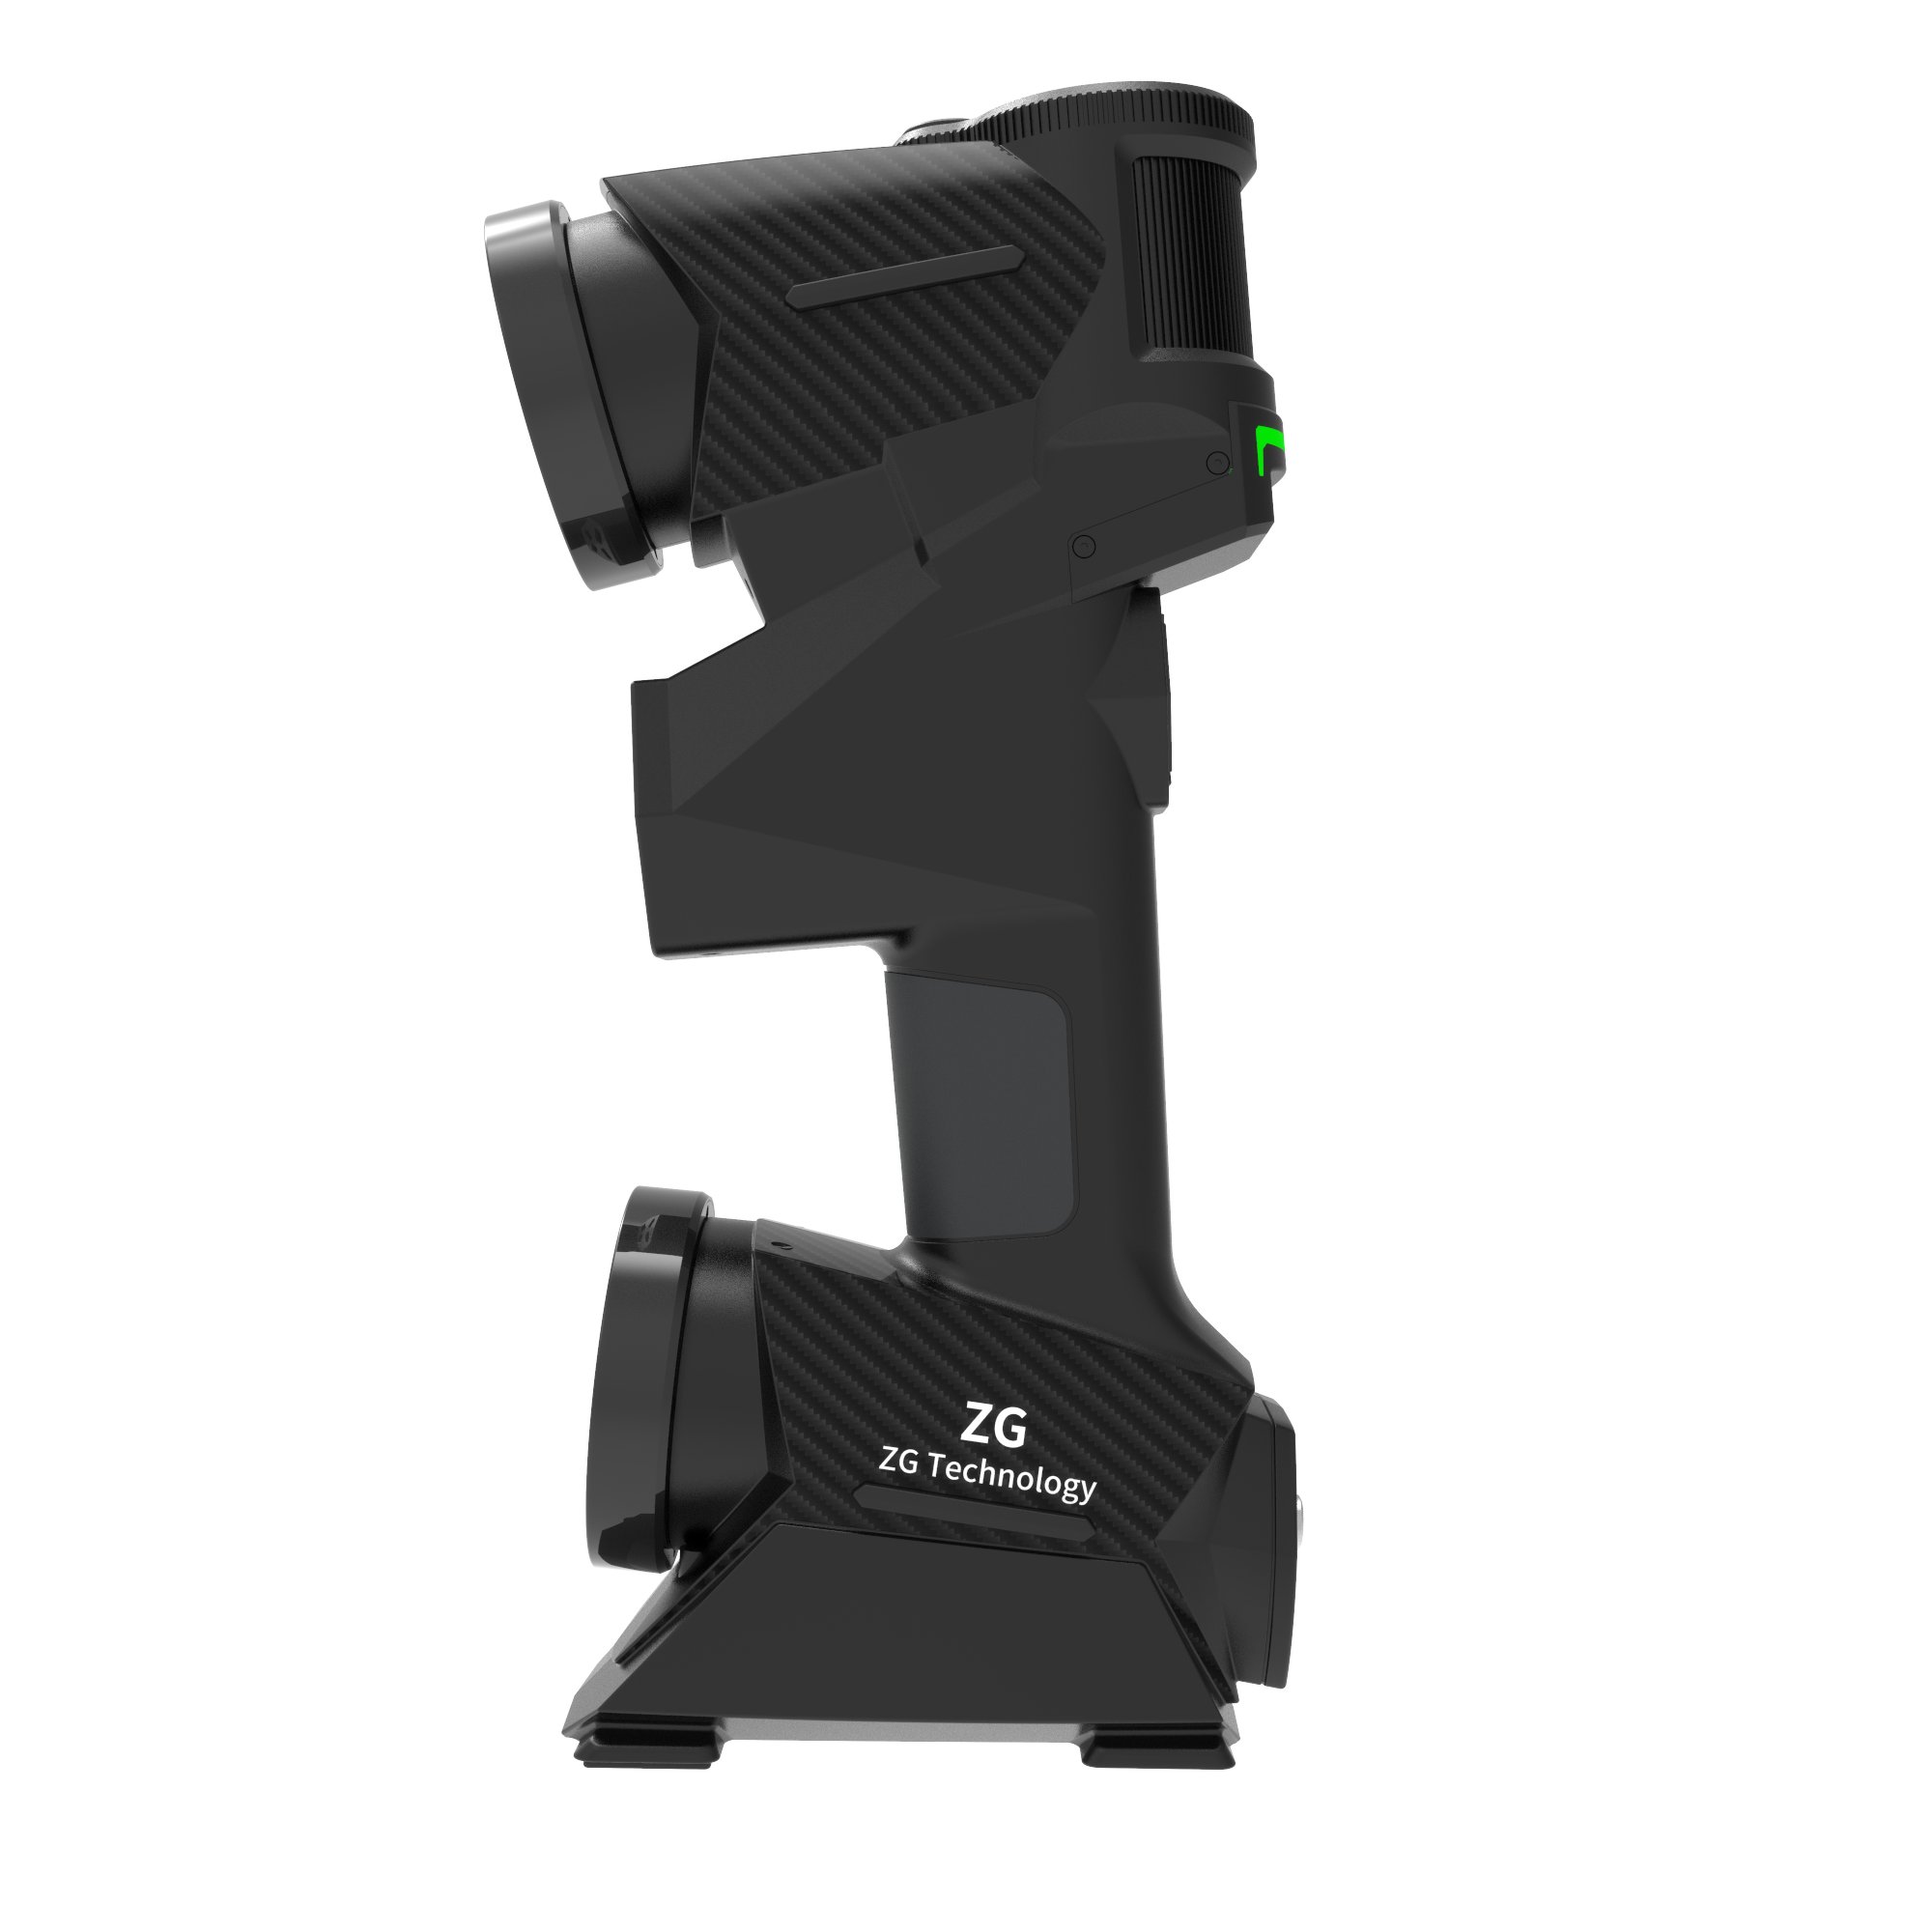 MarvelScan Tracker Free Marker Free Ultra Fast Handheld 3D Laser Scanner